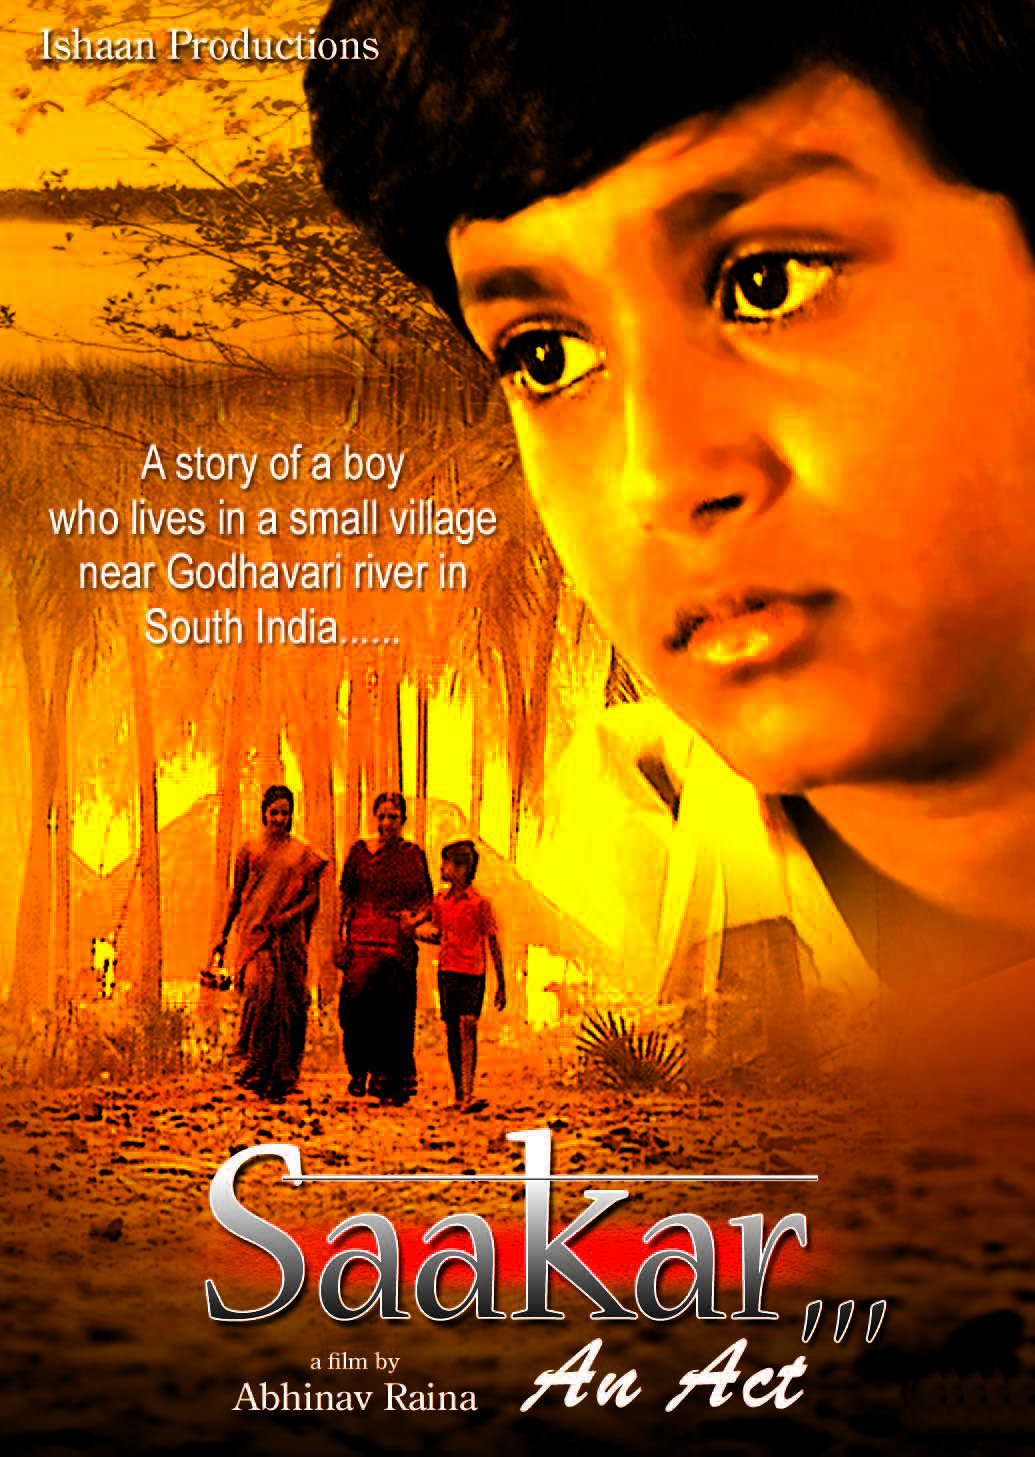 Saakar - An Act (Hindi short film)